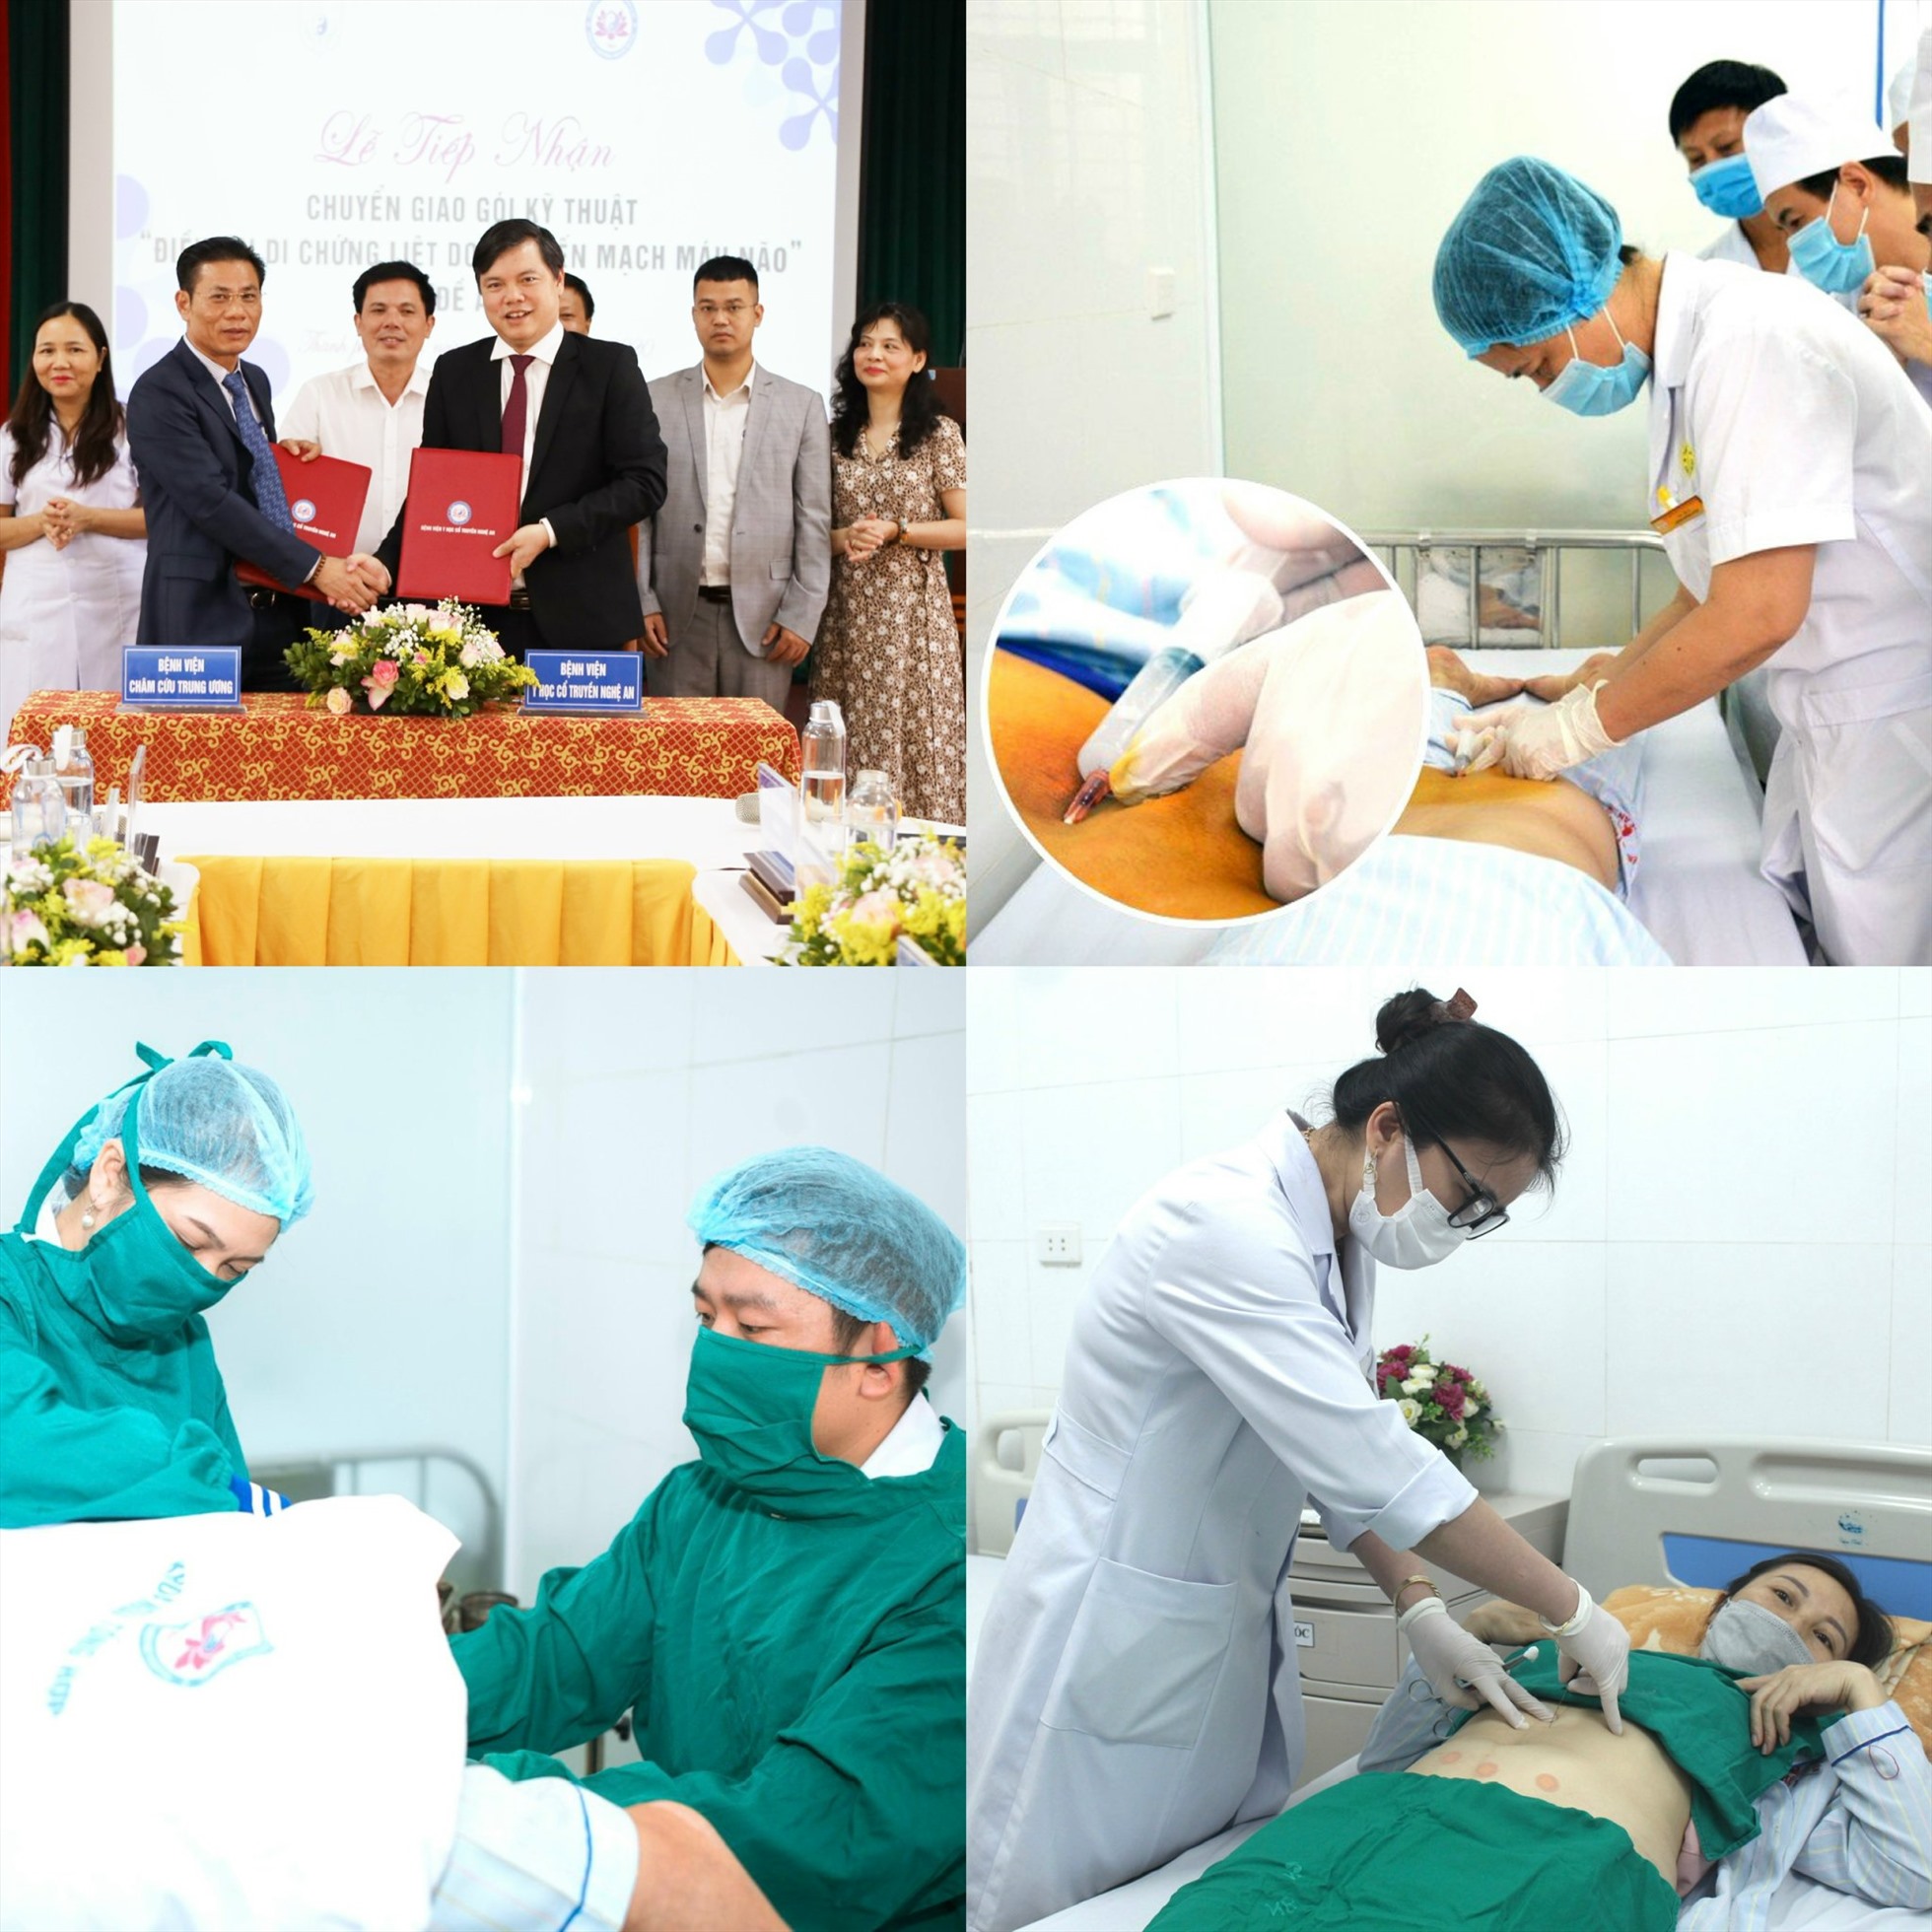 Bệnh viện Y học cổ truyền Nghệ An chú trọng phát triển đội ngũ cán bộ y bác sĩ có chuyên môn kỹ thuật chuyên sâu. Ảnh: Hồng Nhung